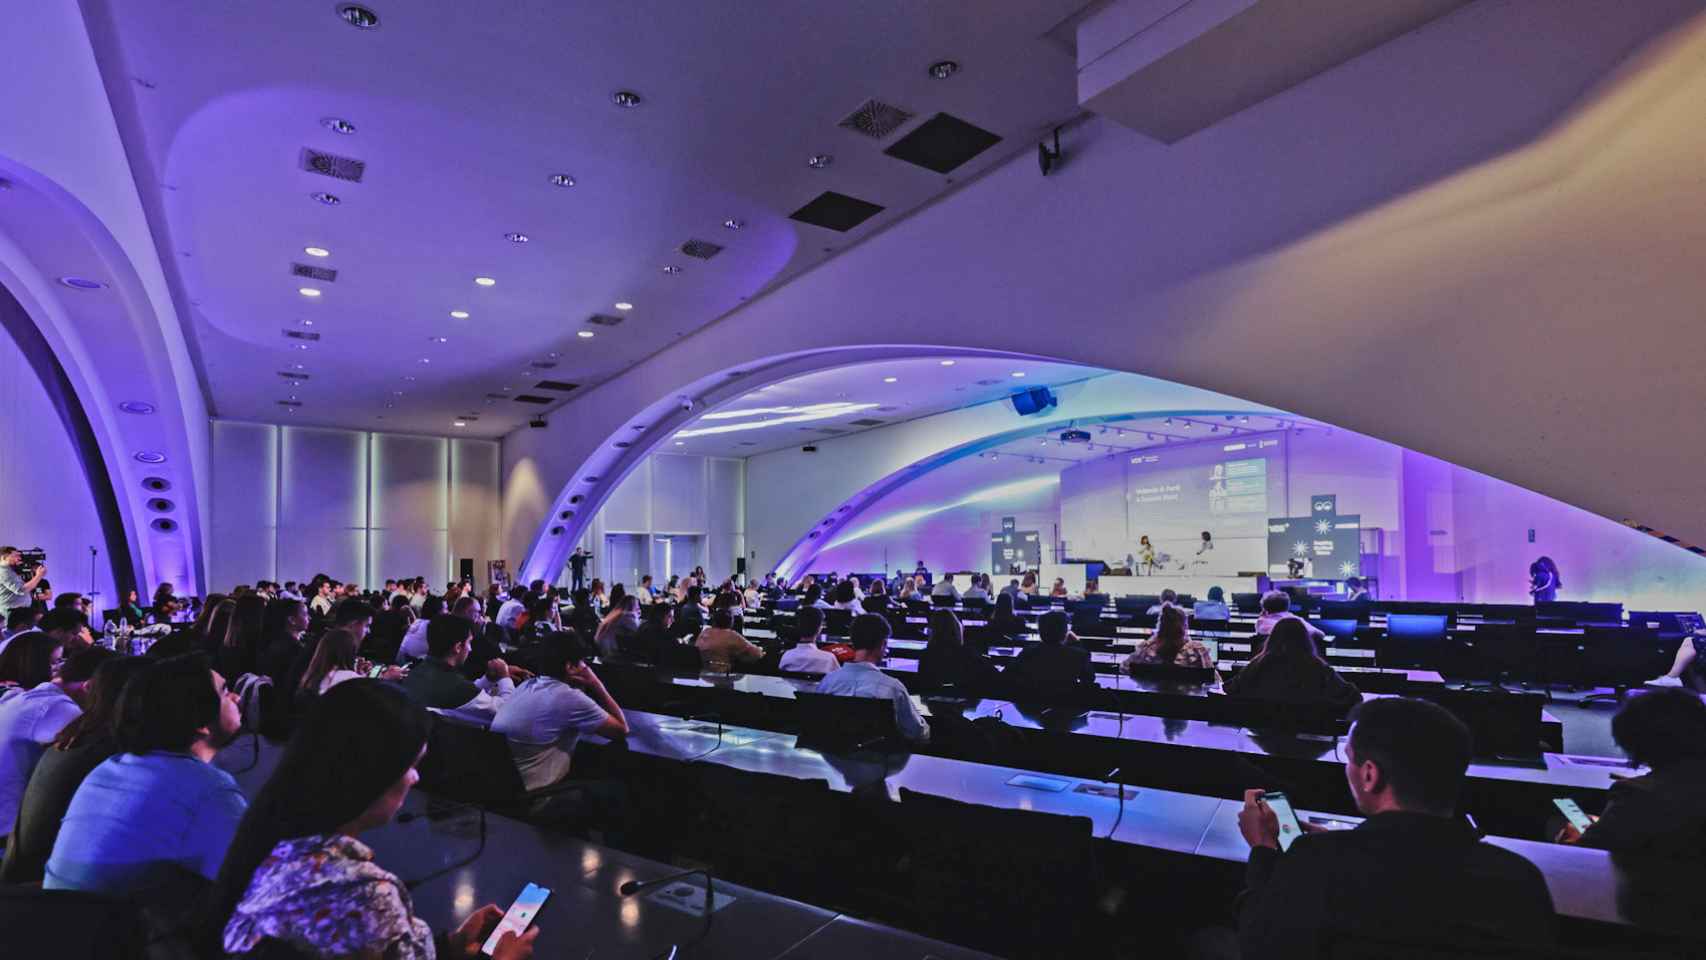 El público copa el escenario principal de Valencia Digital Summit en la pasada edición del evento tecnológico internacional.